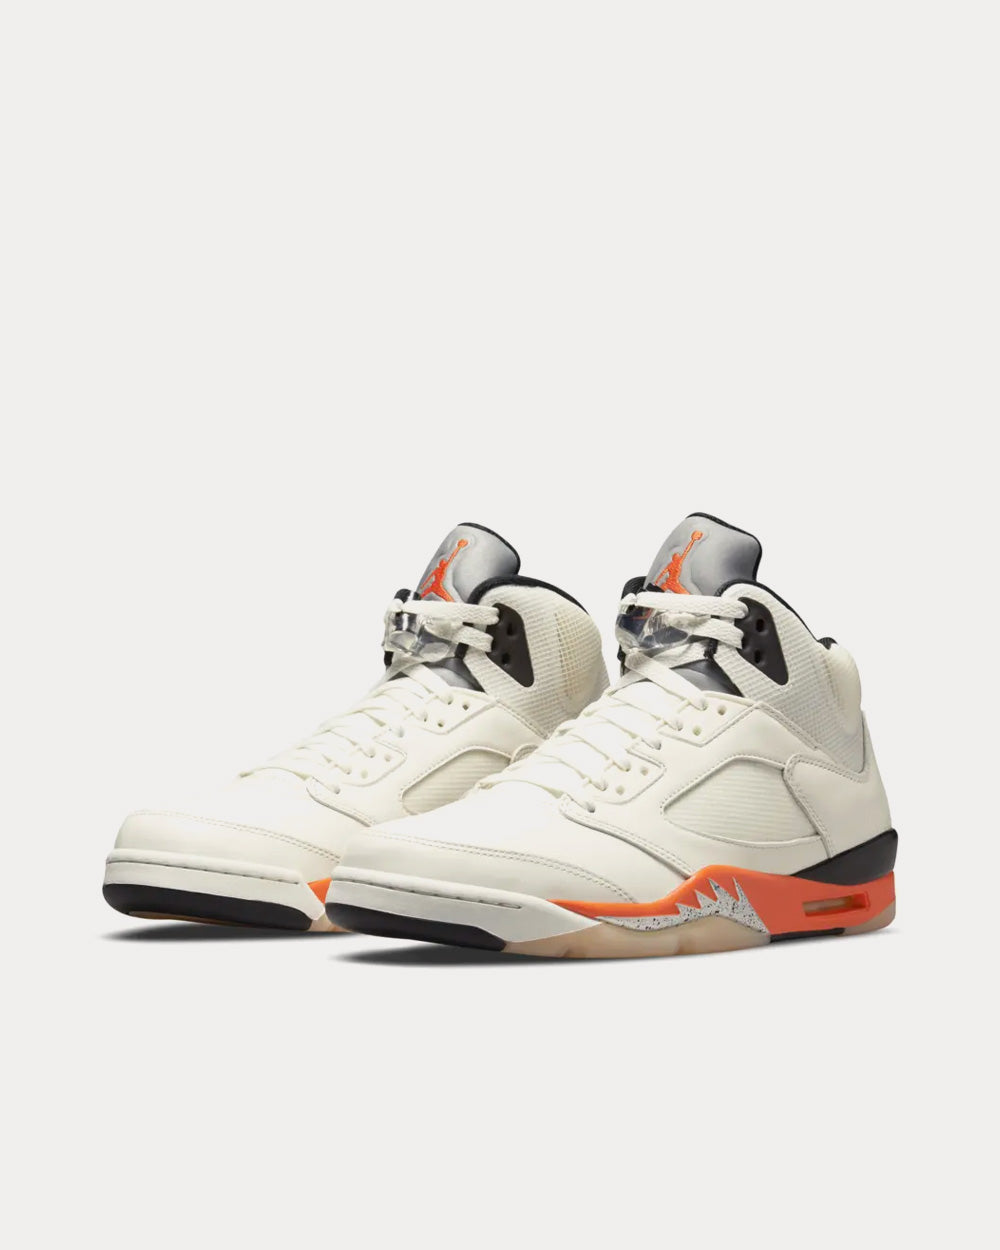 Jordan - Air Jordan 5 Orange Blaze High Top Sneakers